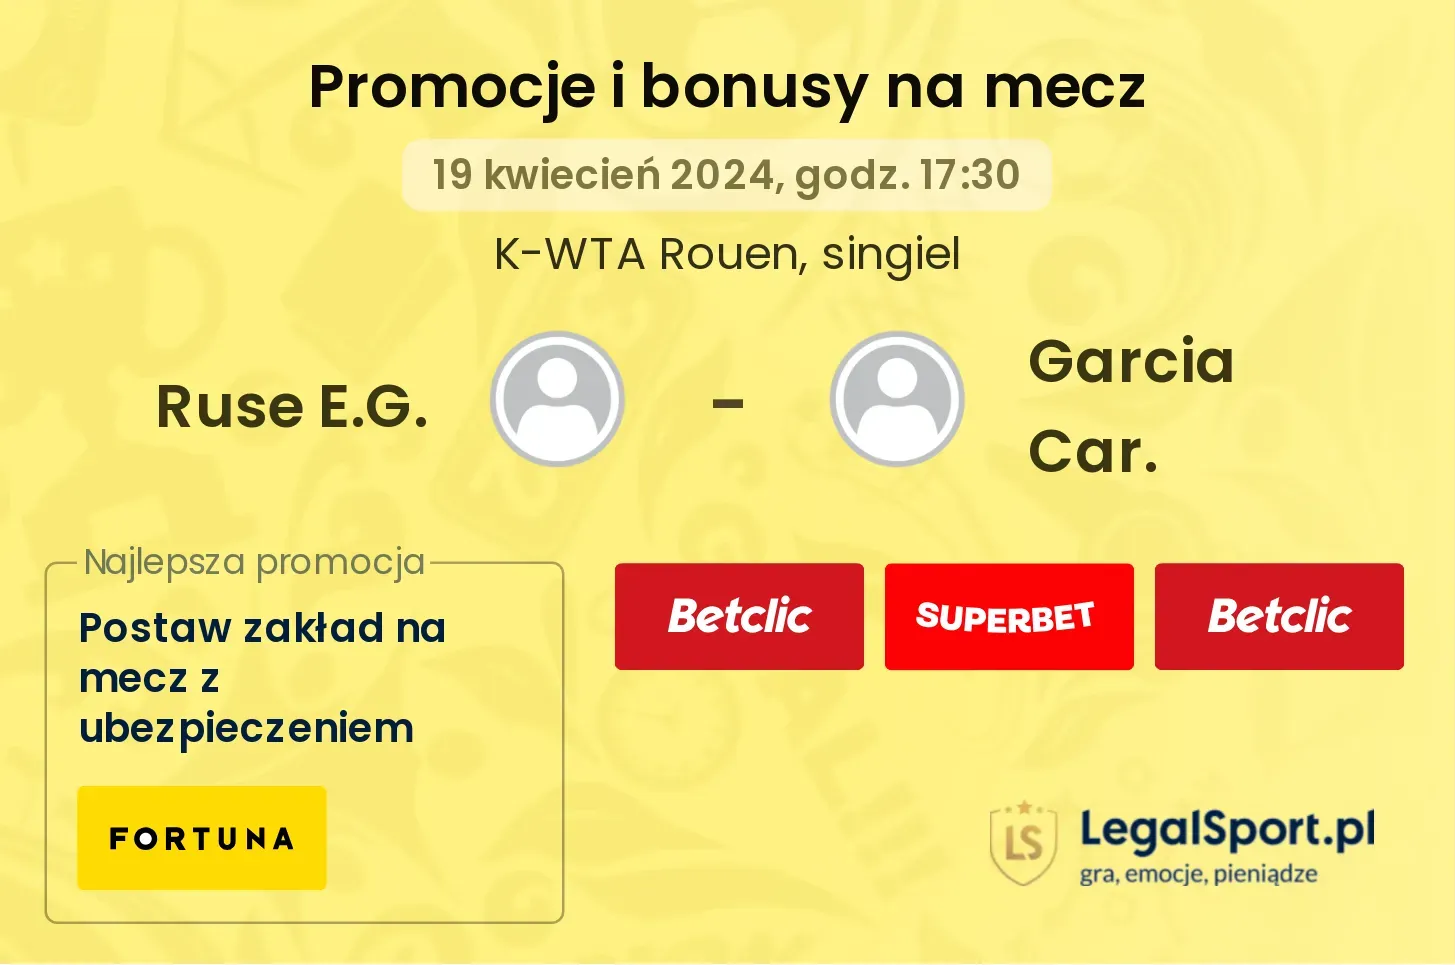 Ruse E.G. - Garcia Car. promocje bonusy na mecz